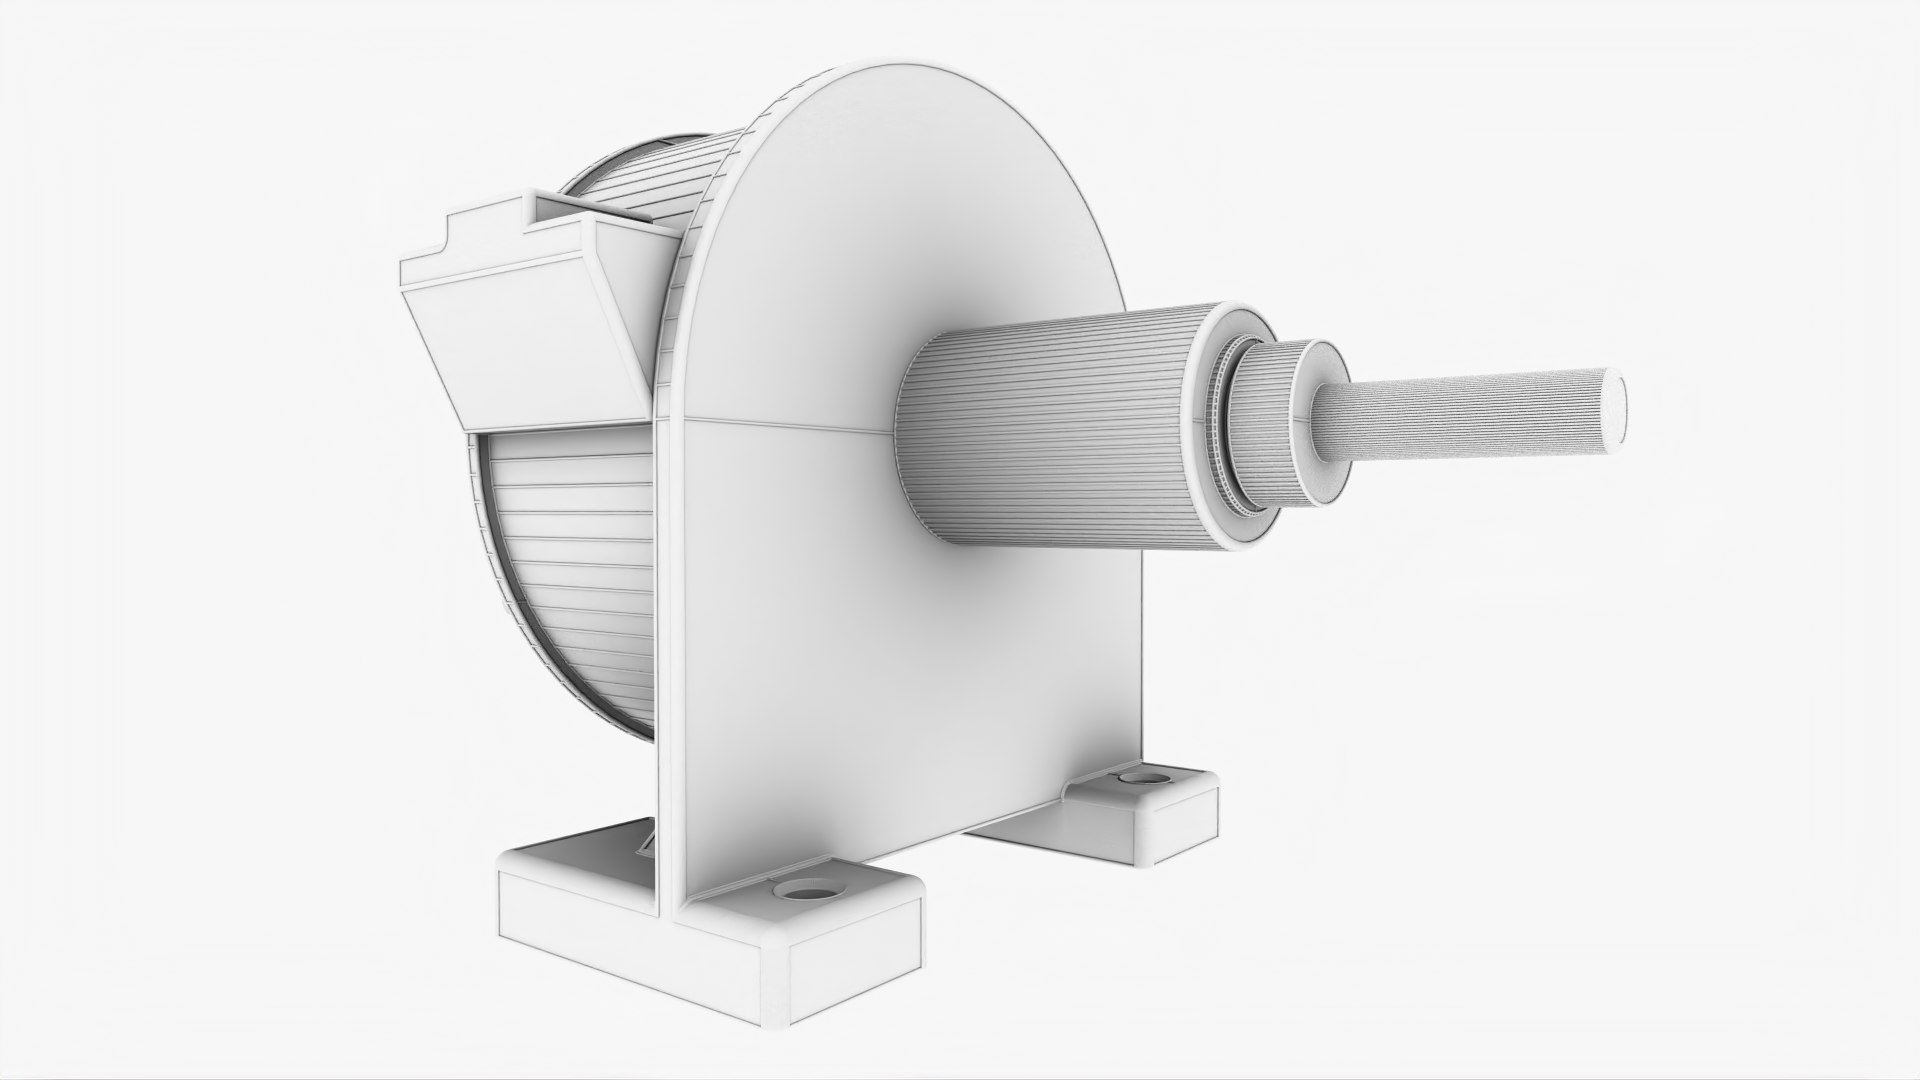 modèle 3D de Tour de bobine Mega Tesla gratuit - TurboSquid 1673588